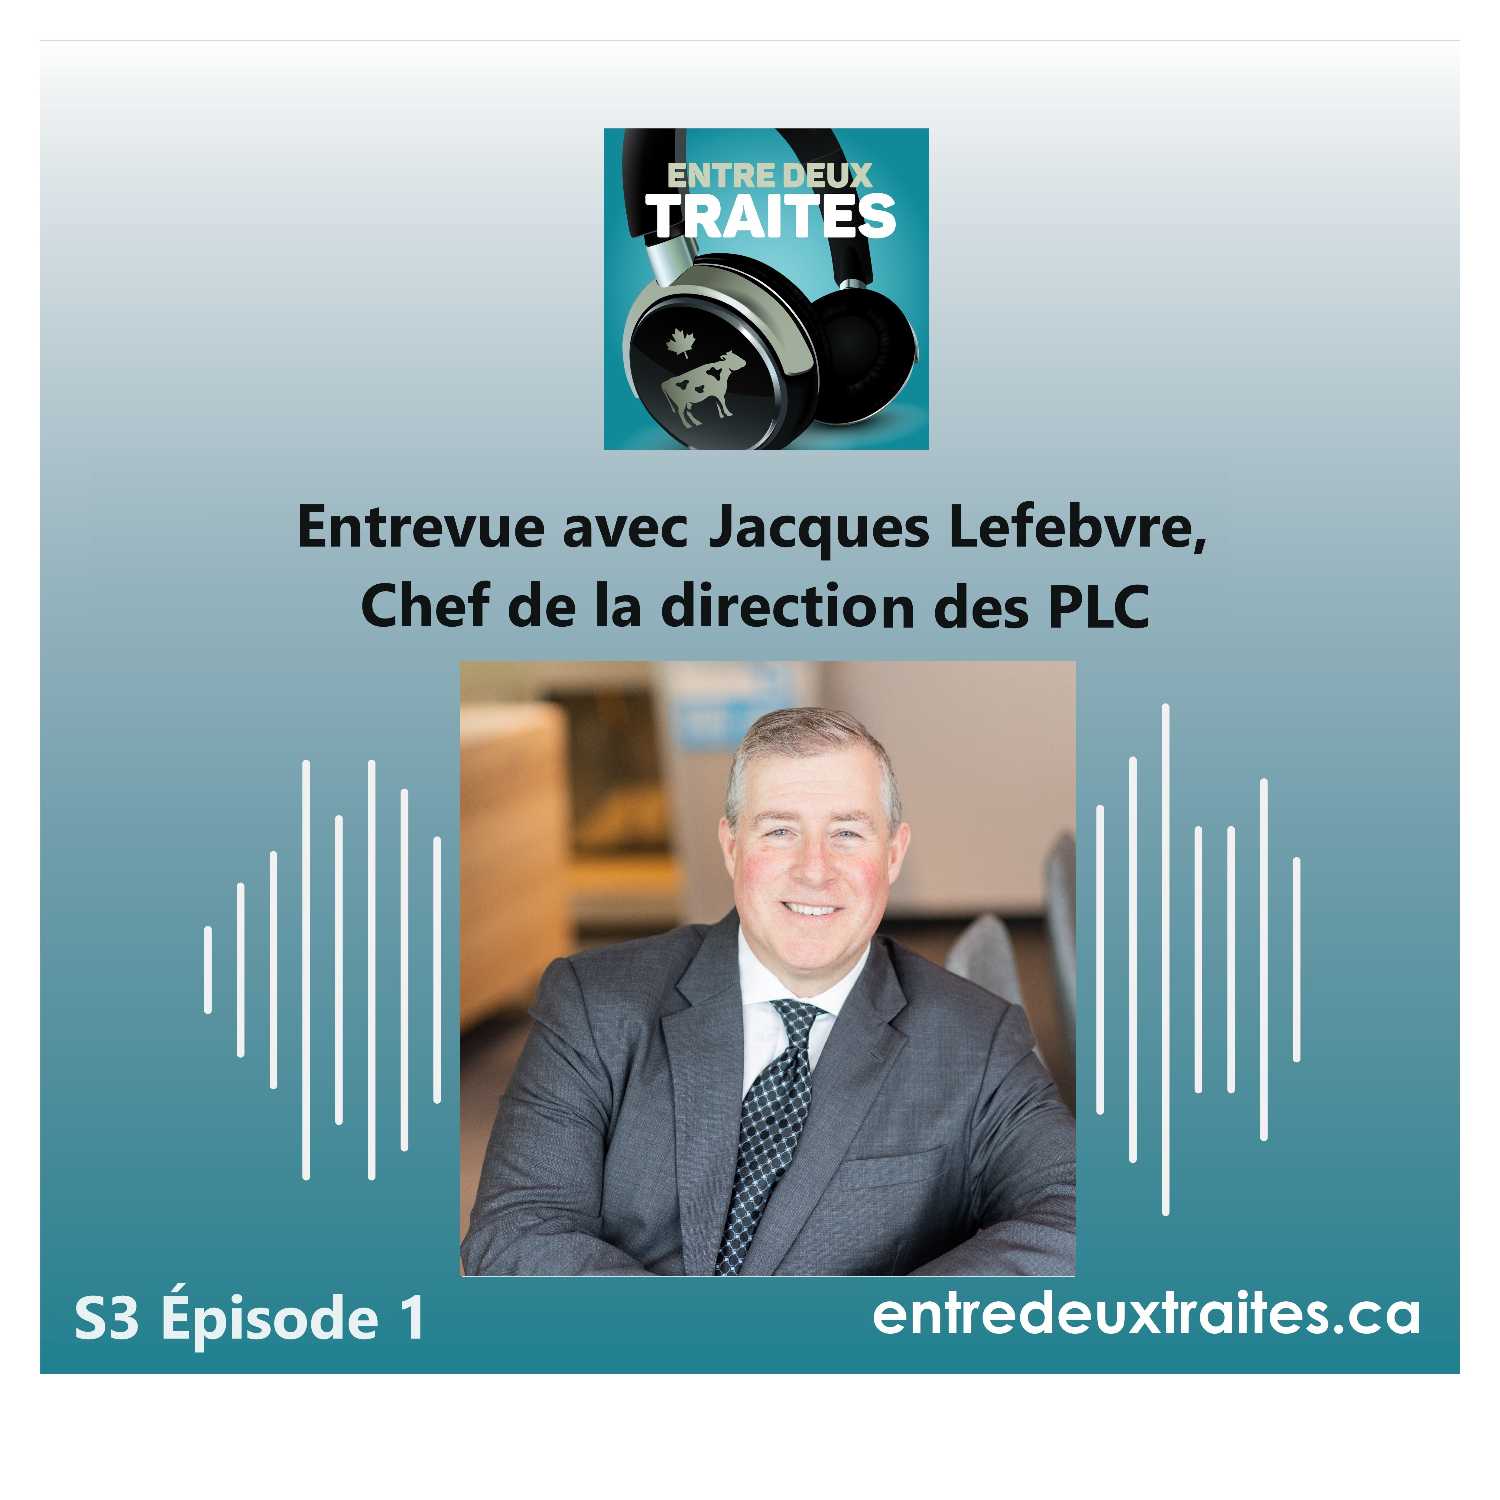 Entrevue avec Jacques Lefebvre, chef de la direction des PLC